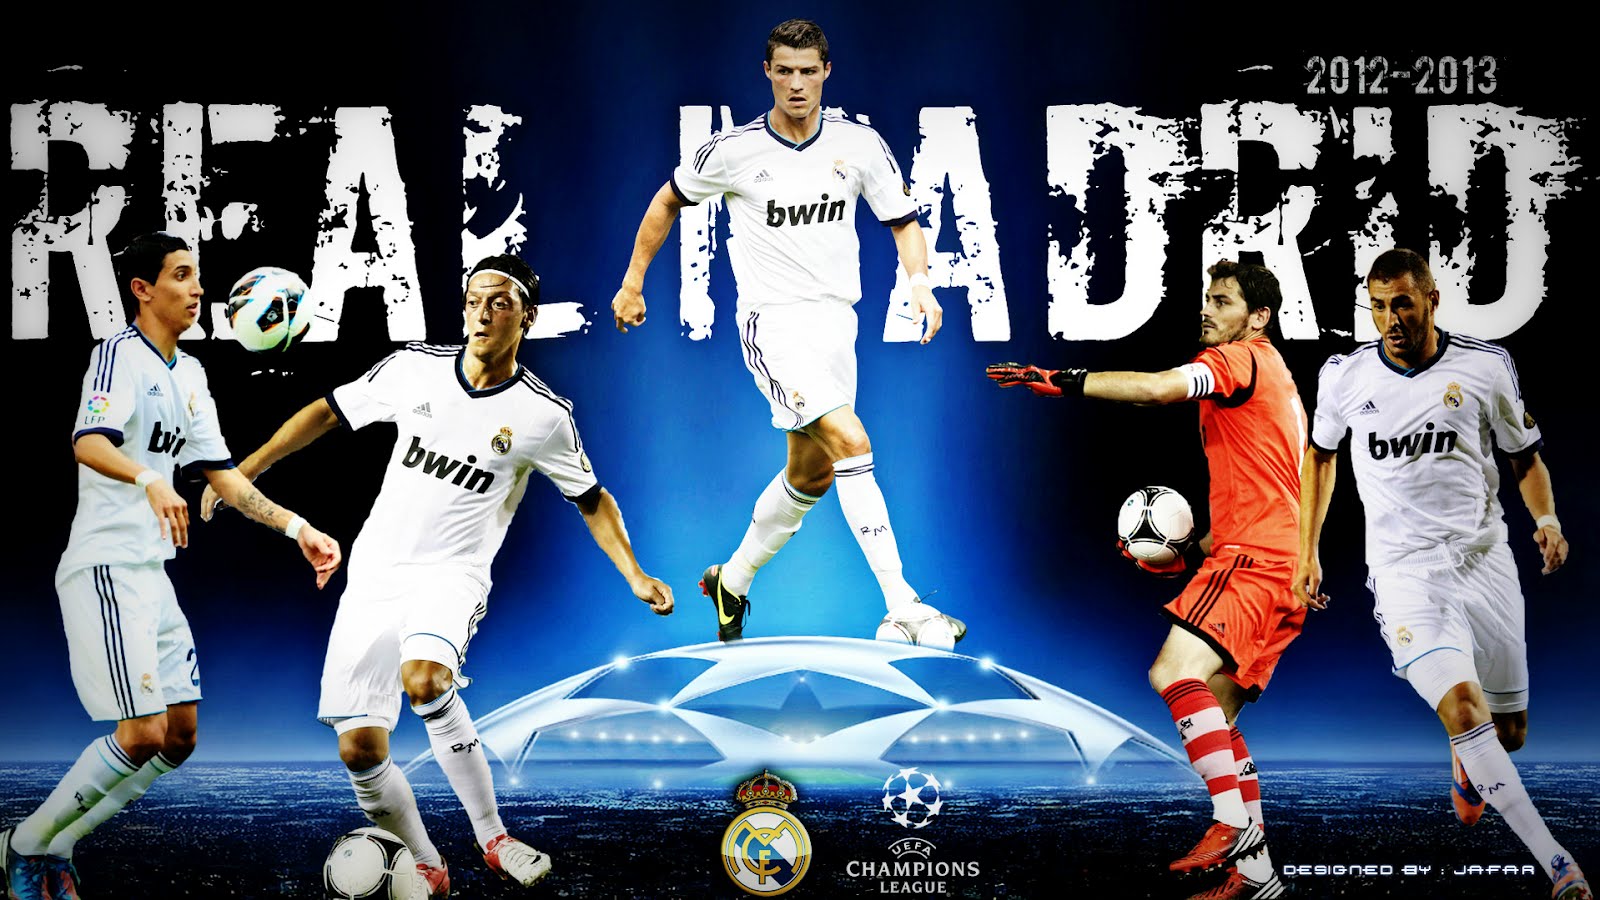 http://2.bp.blogspot.com/-frgePqeN3kw/UMTfTcA_EEI/AAAAAAAANaE/1fC3pF6Q_40/s1600/Real+Madrid+2013+Wallpaper+HD.jpg